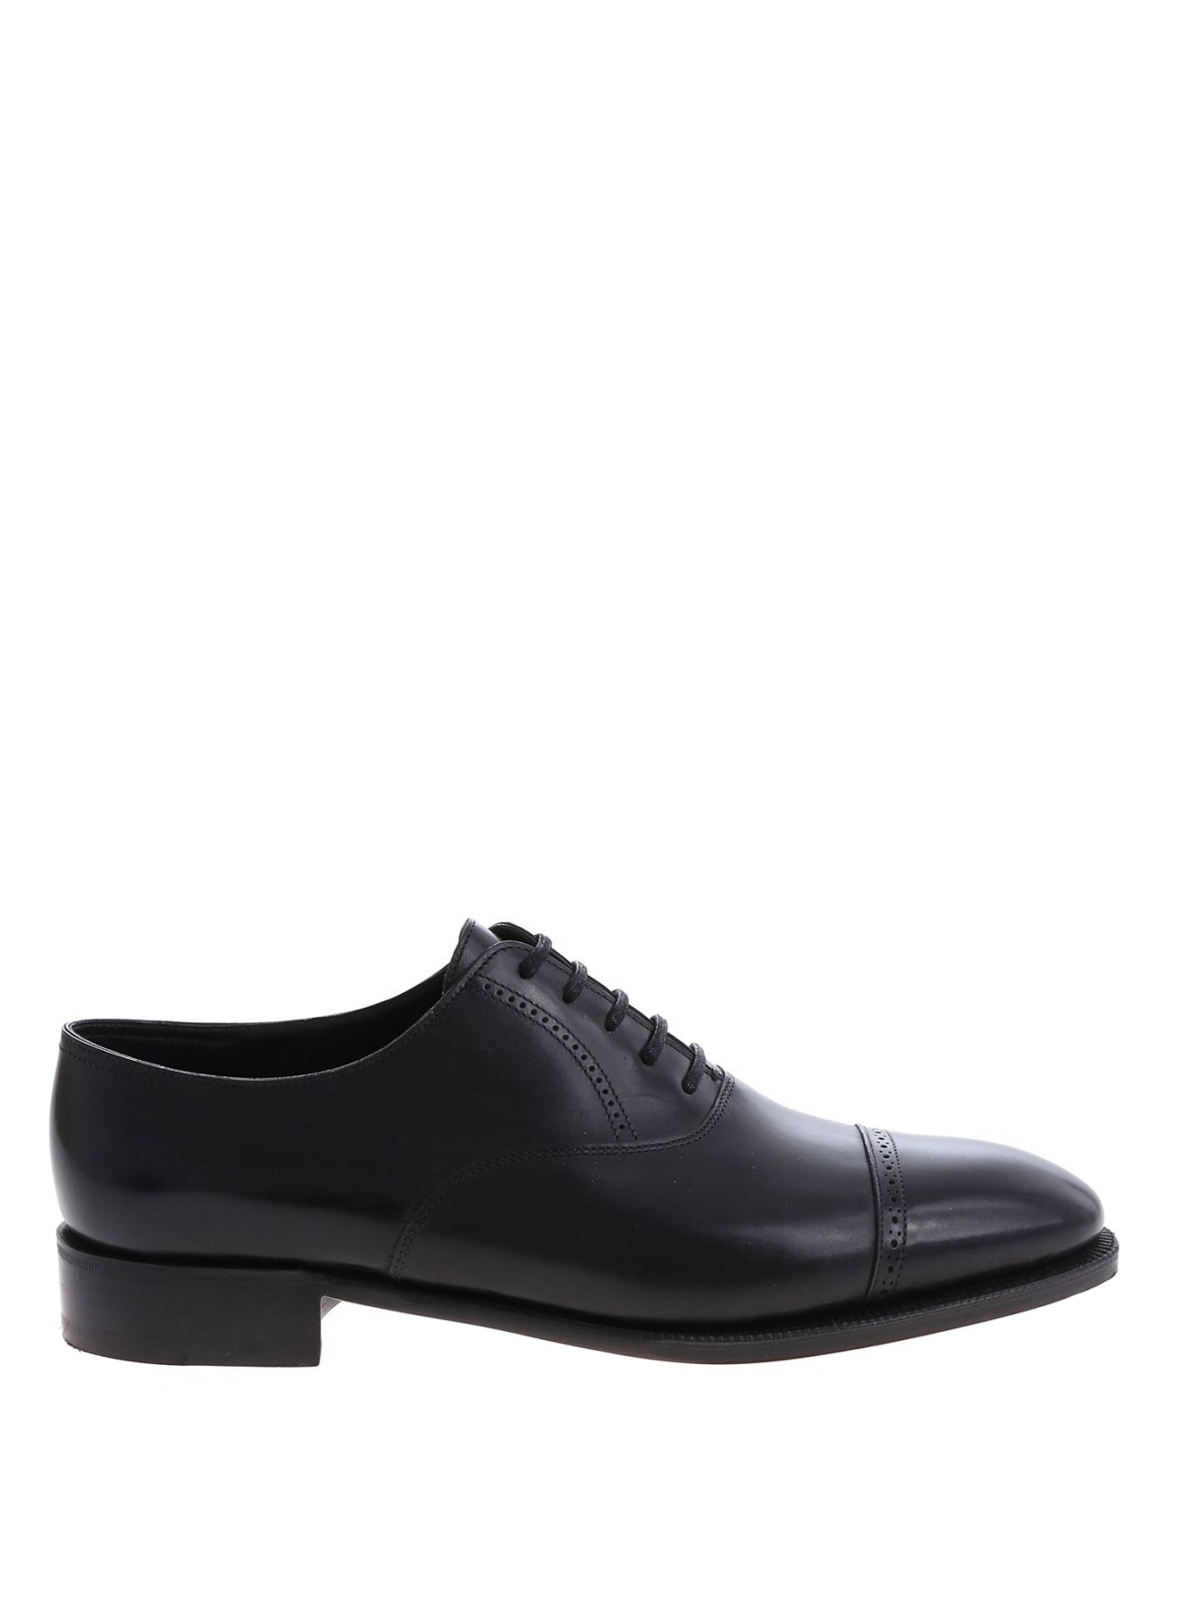 Shop John Lobb Zapatos Clásicos - Philip Ii Oxford In Negro